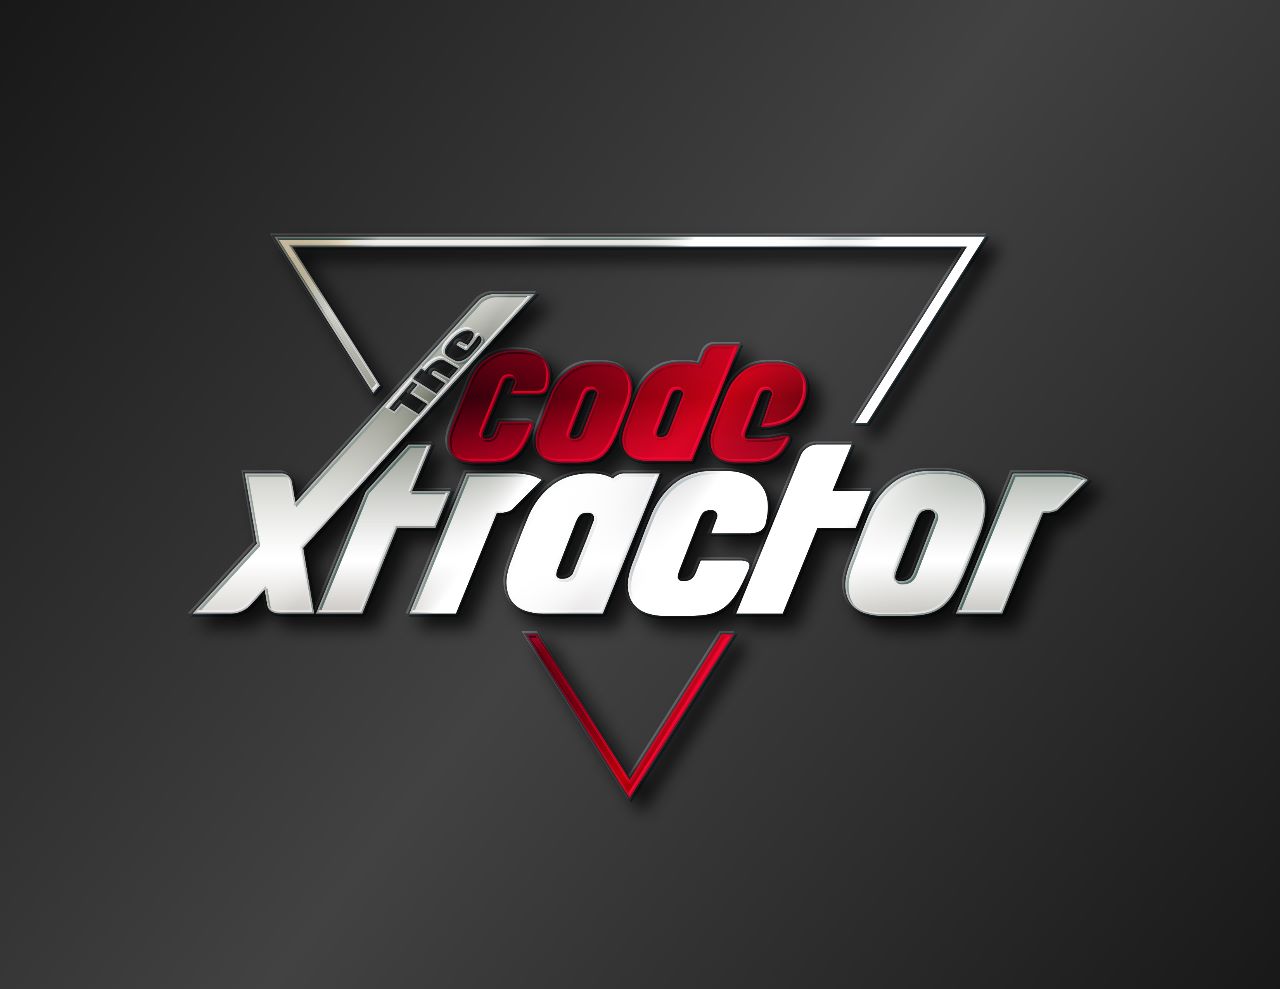 The Code Xtractor